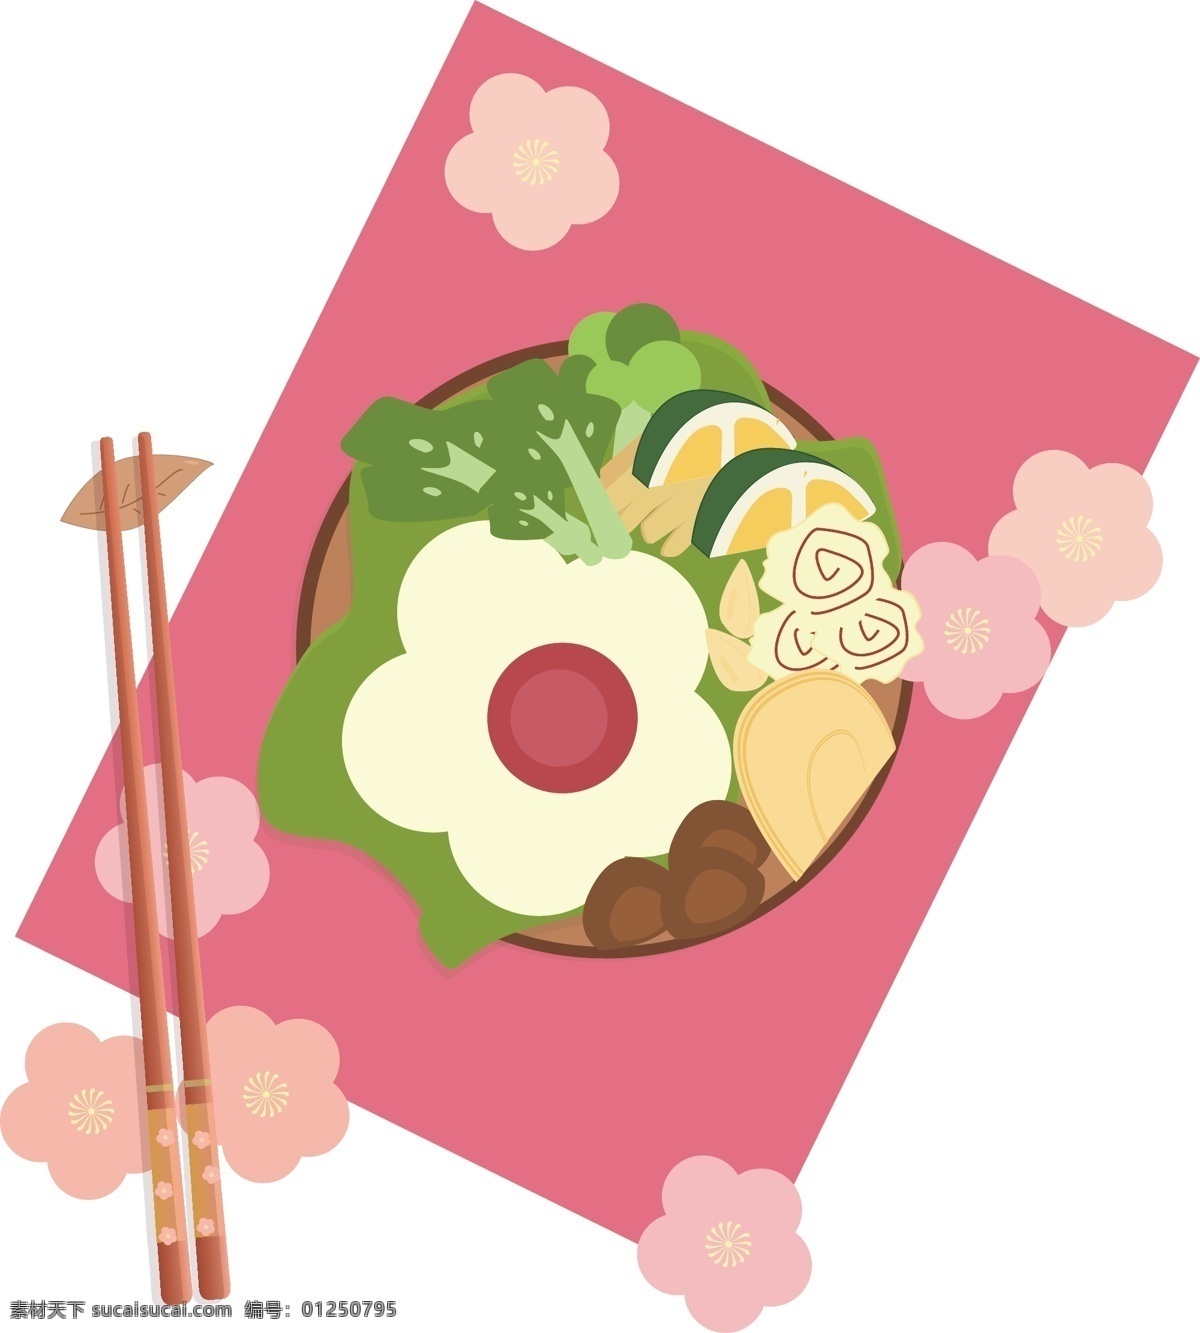 矢量 手绘 卡通 食物 筷子 蔬菜 鸡蛋 香菇 火腿 绿菜 菠菜 香菜 面条 碗 垫子